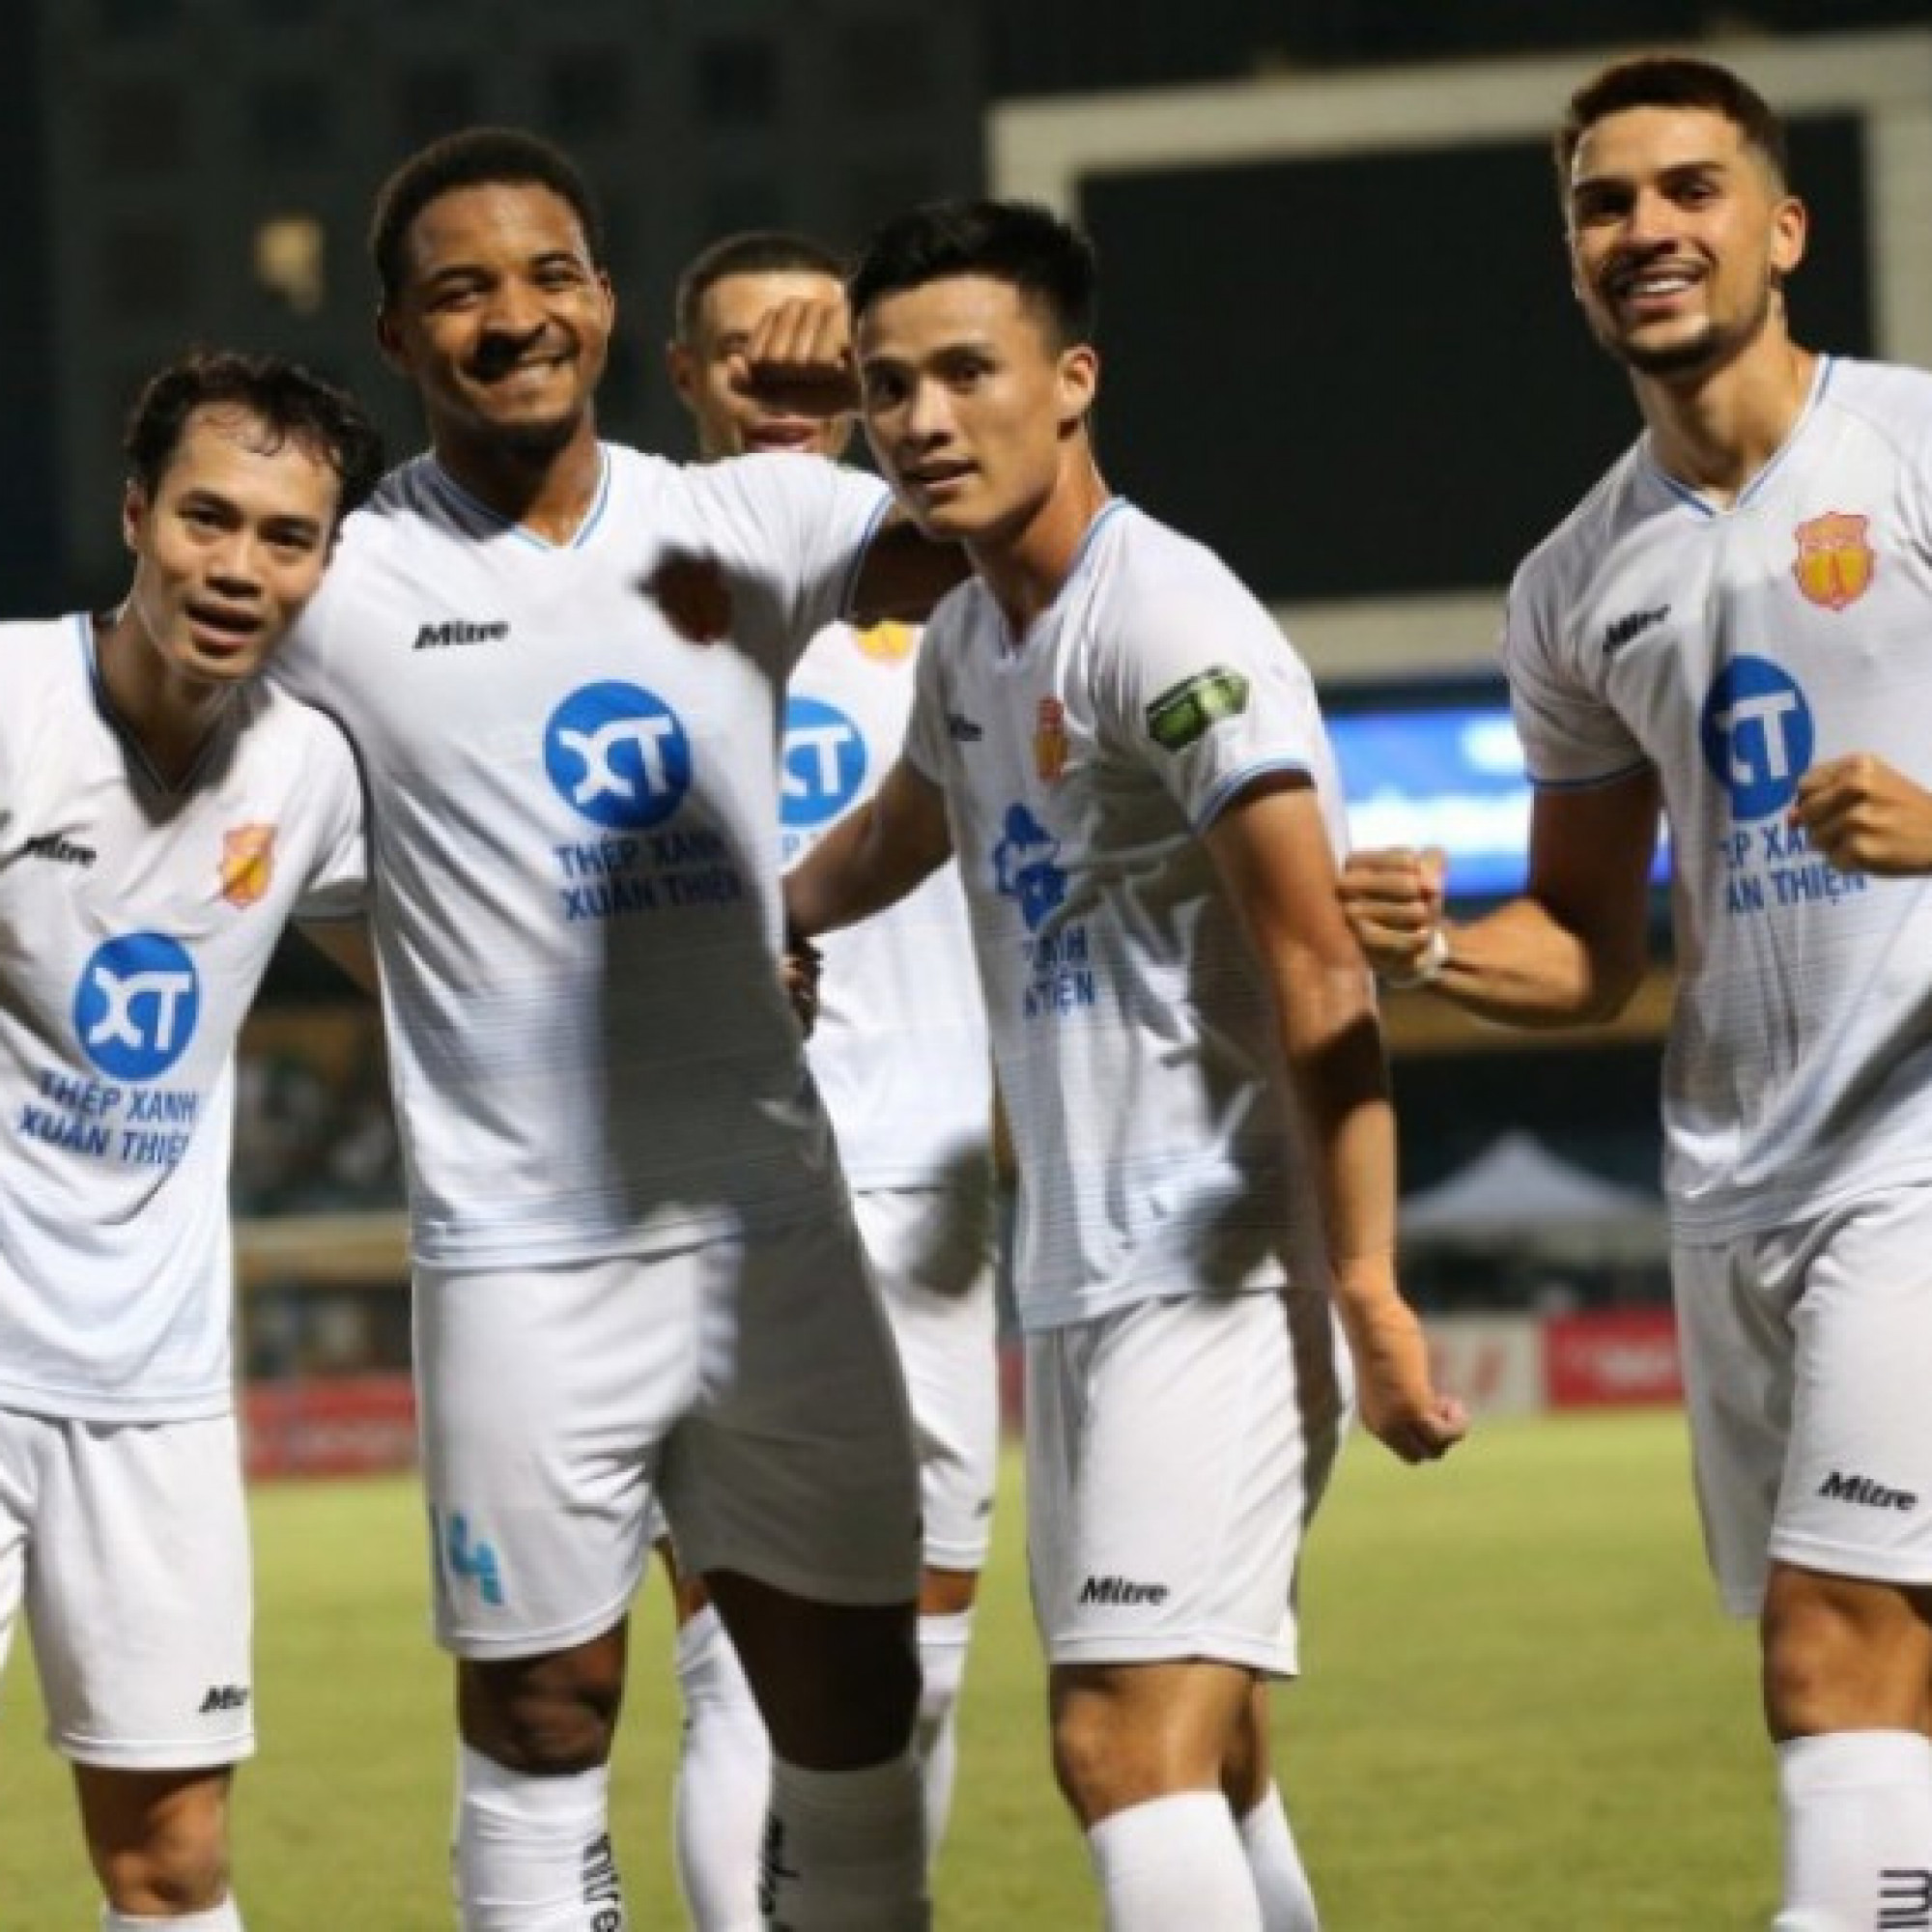  - Trực tiếp bóng đá Thể Công Viettel - Nam Định: Bàn gỡ bất ngờ (V-League)